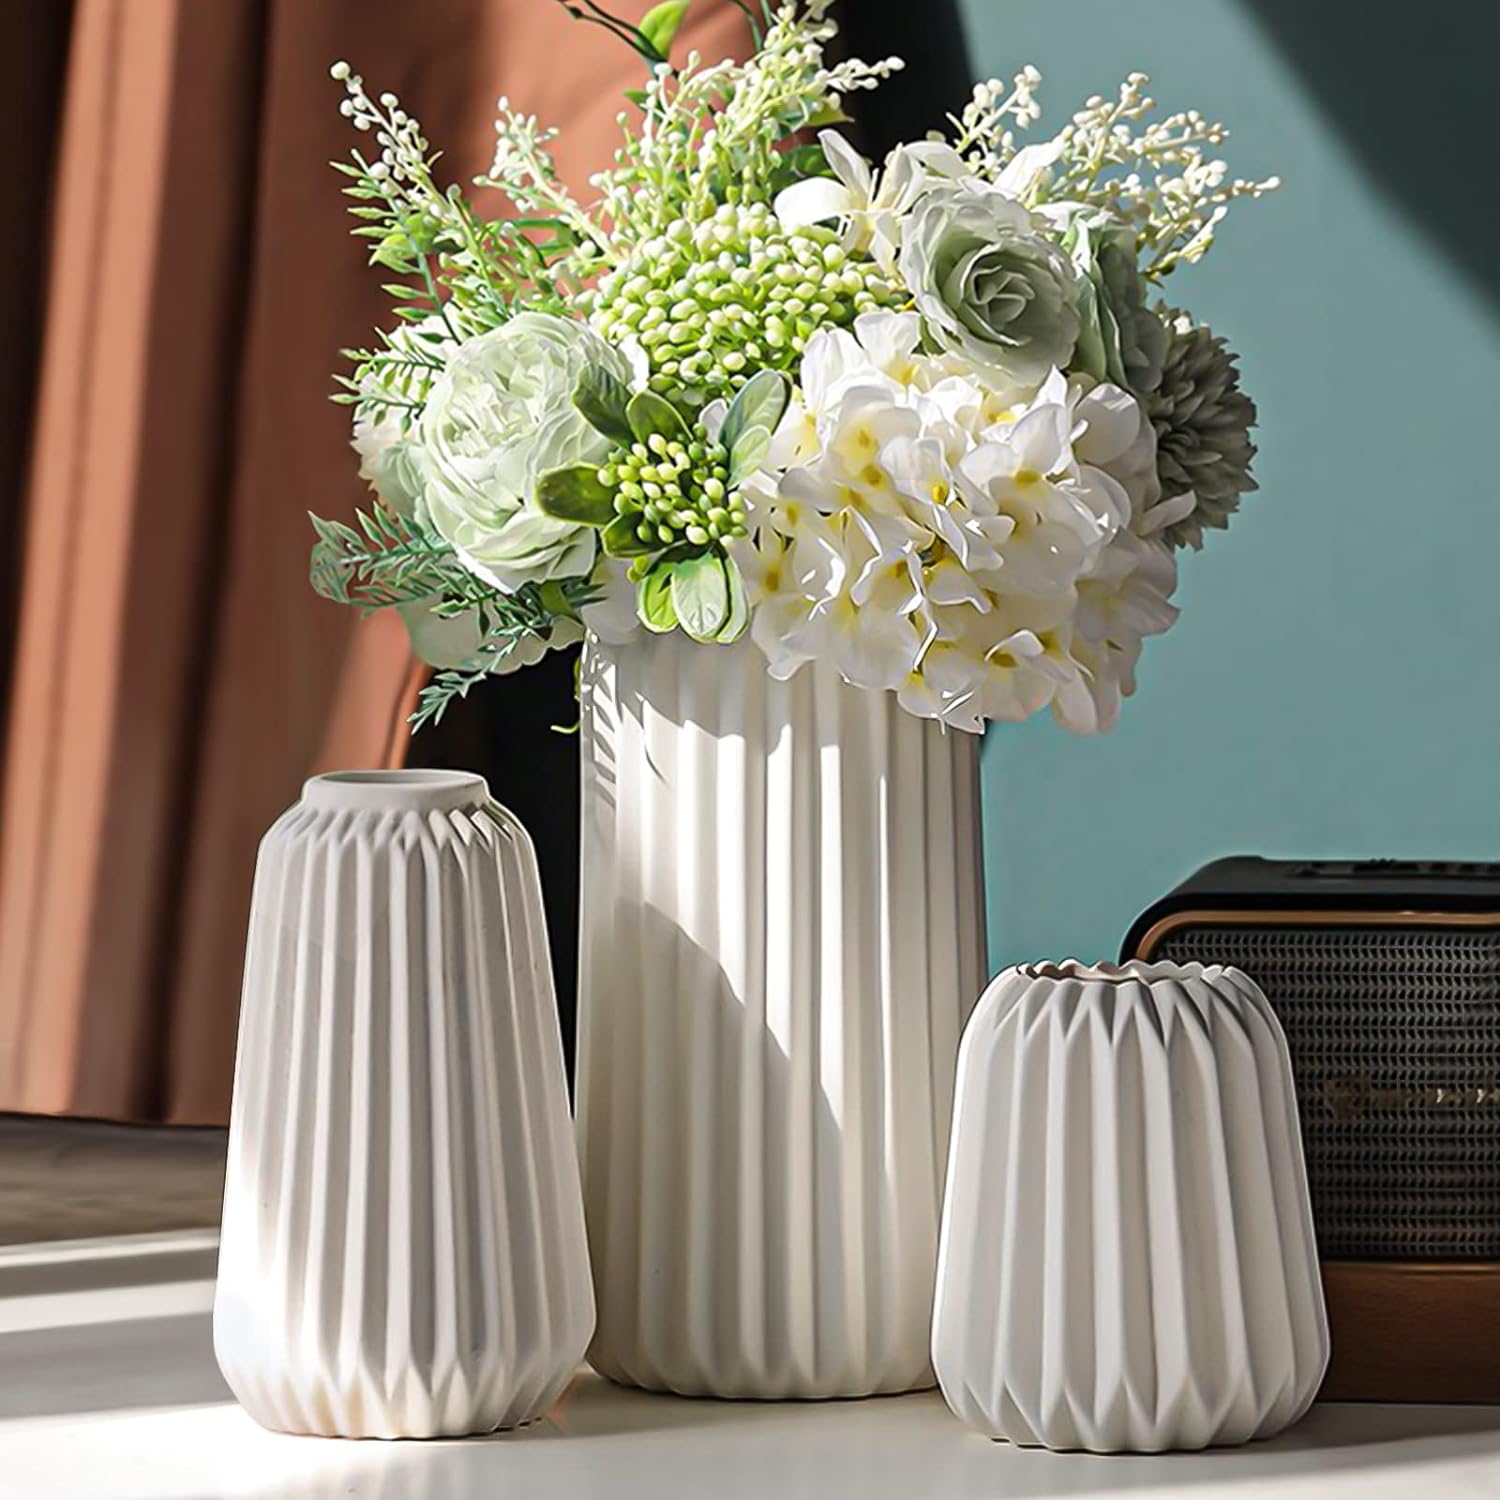 白色ins风陶瓷花瓶，用于现代家居装饰,圆形哑光波西米亚花瓶用于装饰,陶瓷花瓶极简主义北欧风格婚礼餐桌客厅办公室装饰花瓶